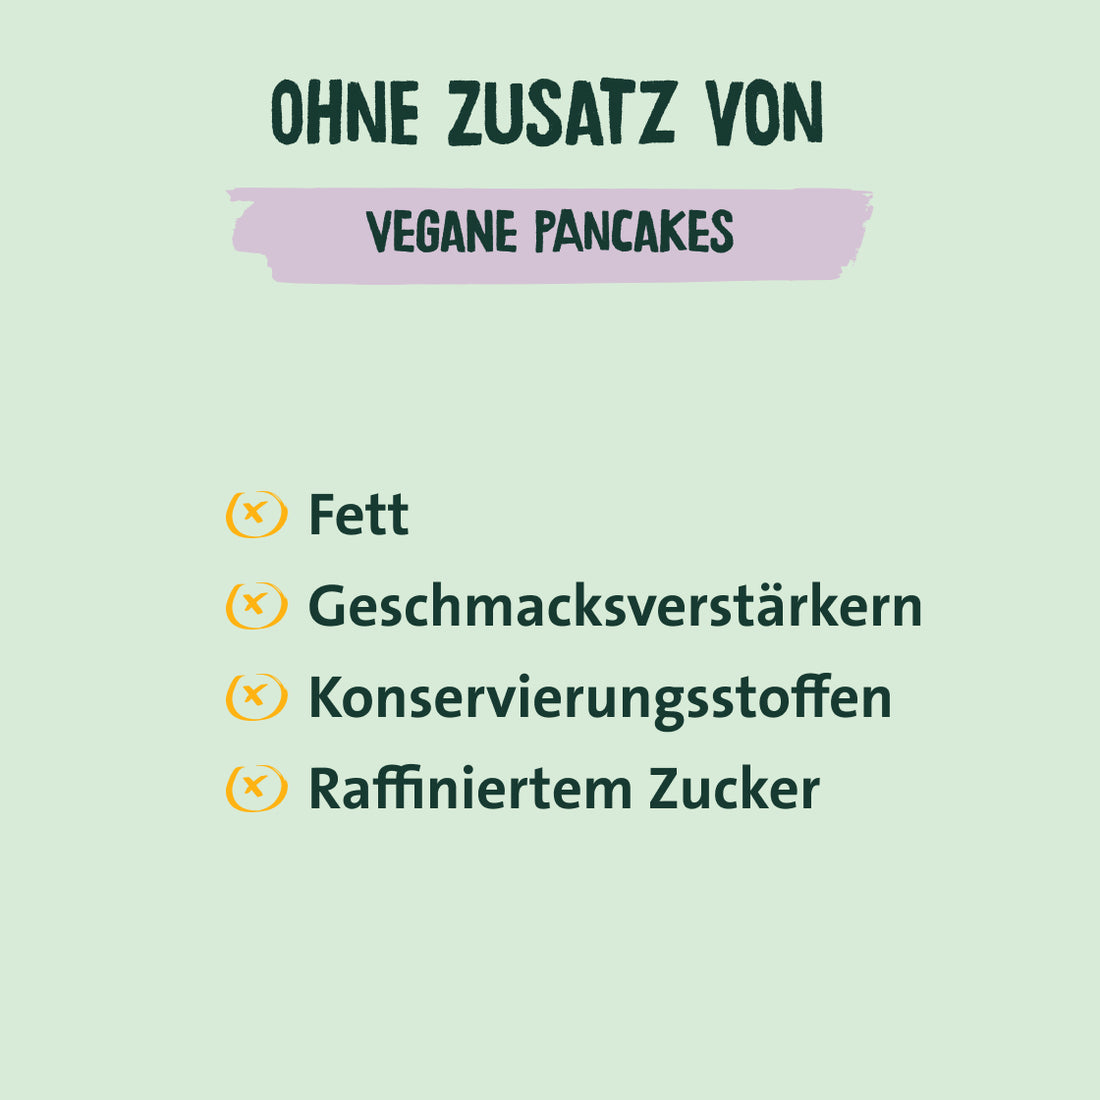 Vegan pancakes - baking mix